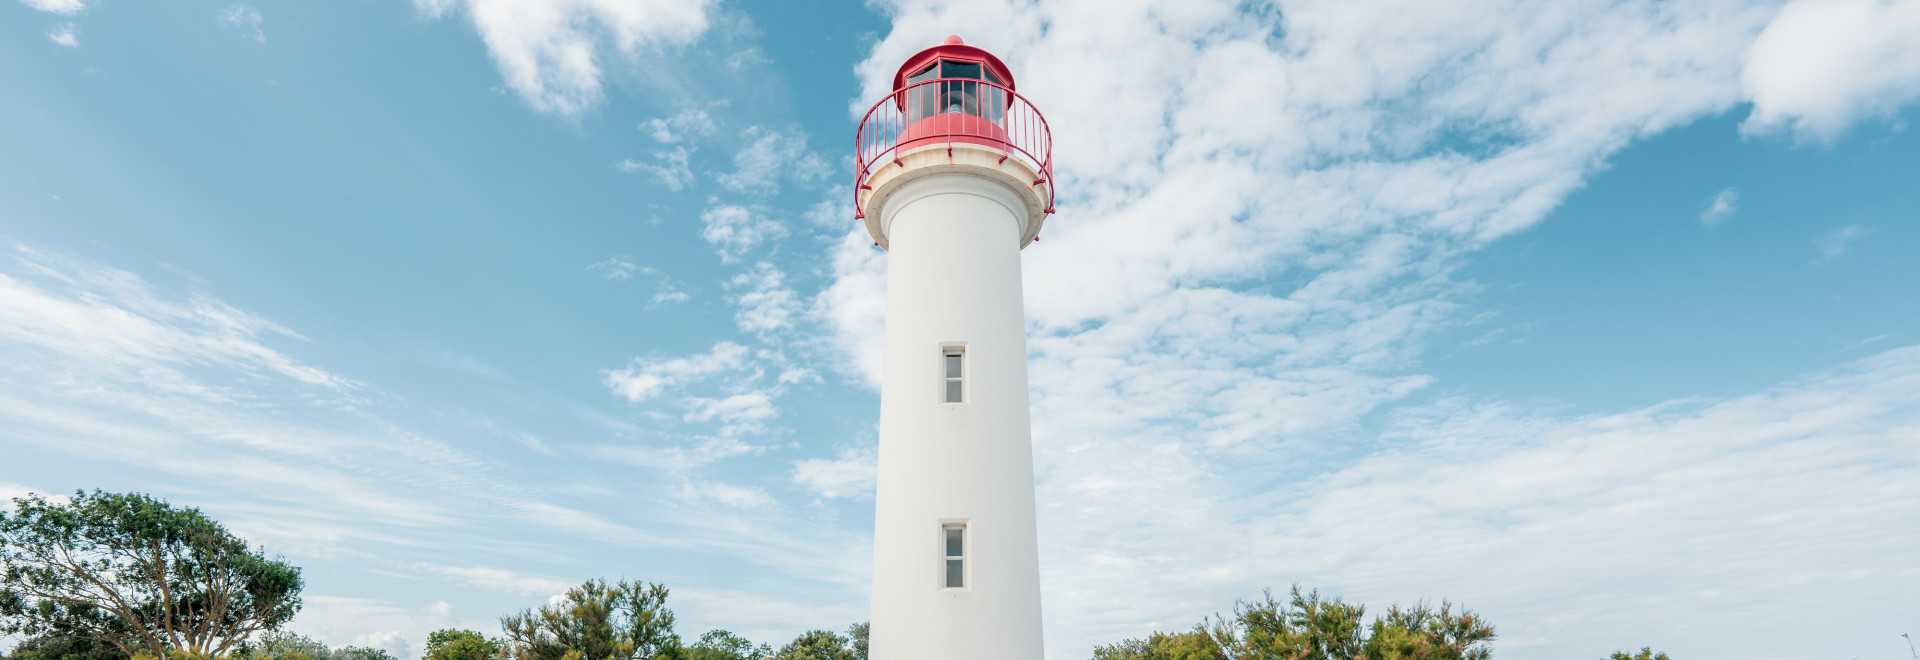 Ile de Ré lighthouse unusual place to visit out of season